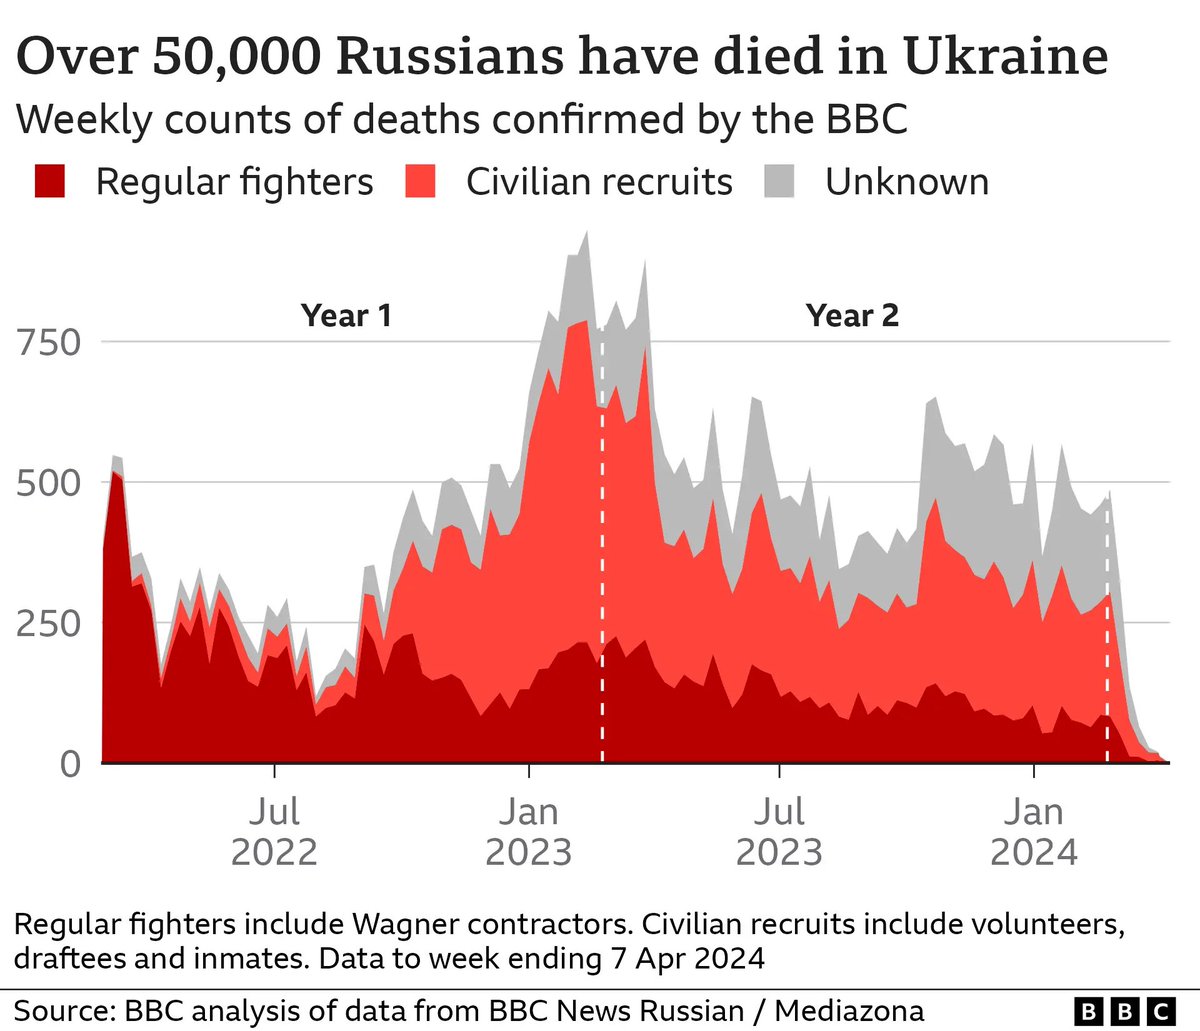 ยืนยันแล้วทหารรัสเซียตายกว่า 50,000 นาย ในสงคราม #ยูเครน #รัสเซีย